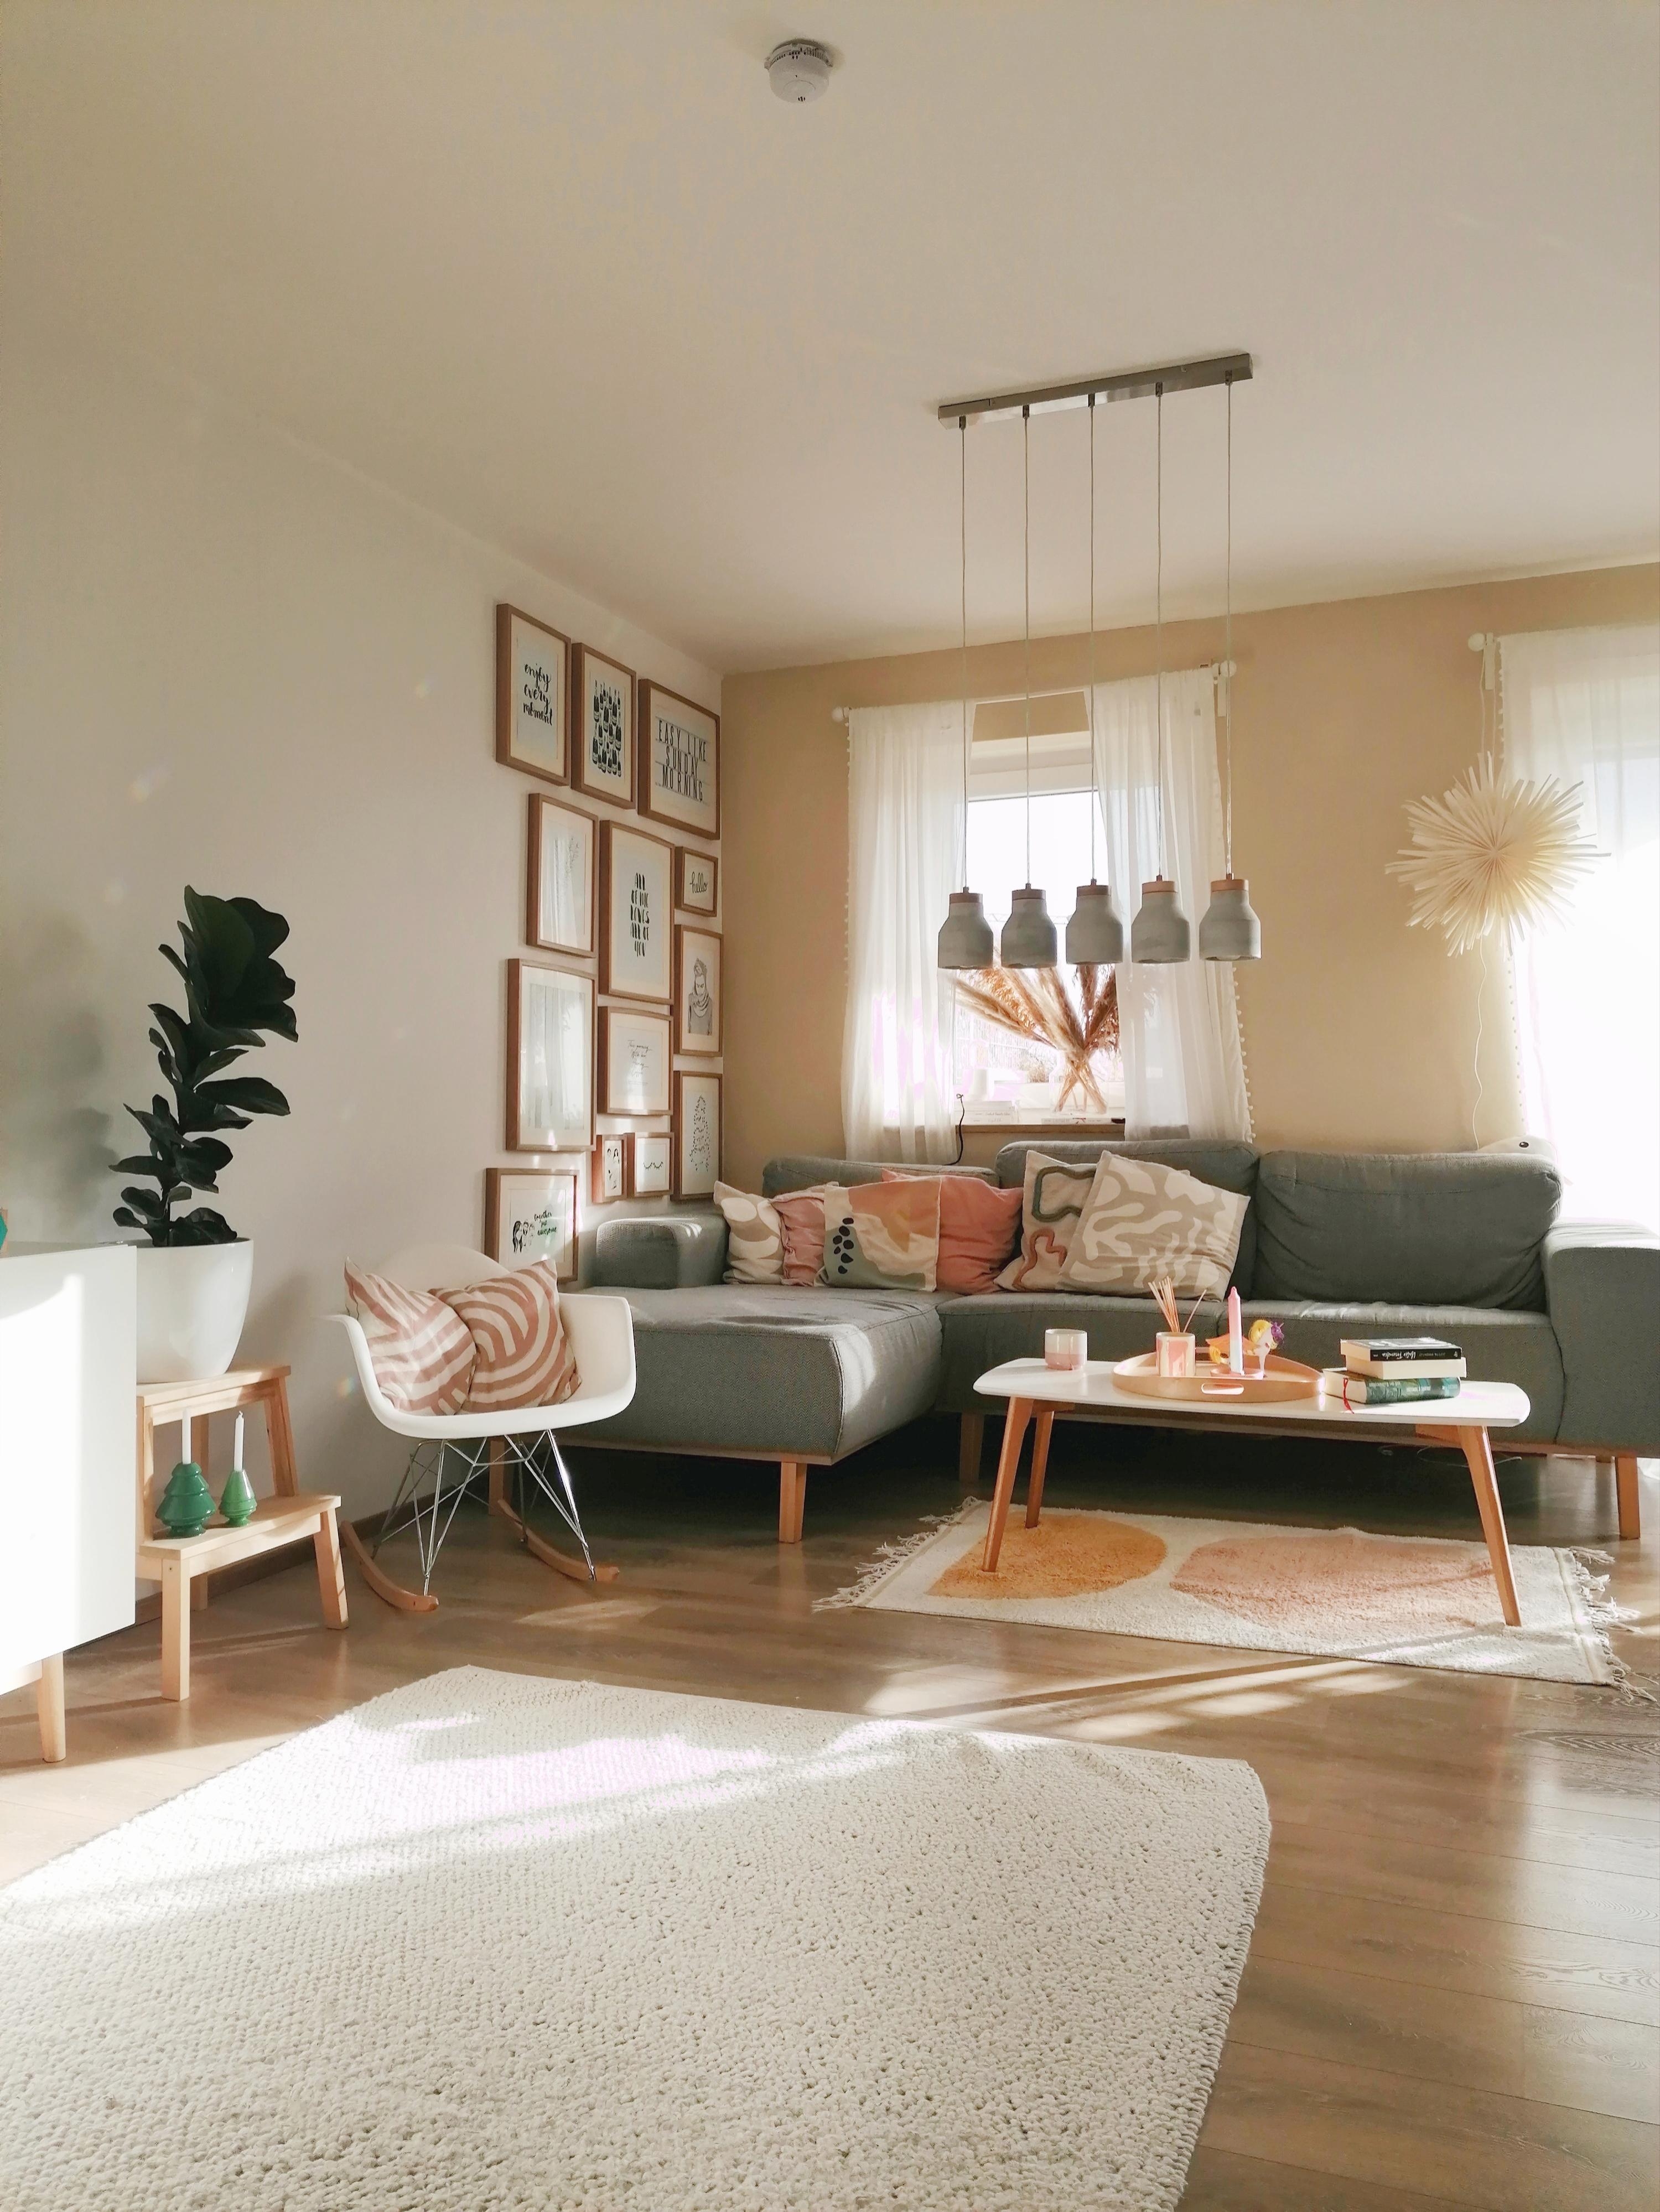 #couchliebt
#wohnzimmer #livingroom